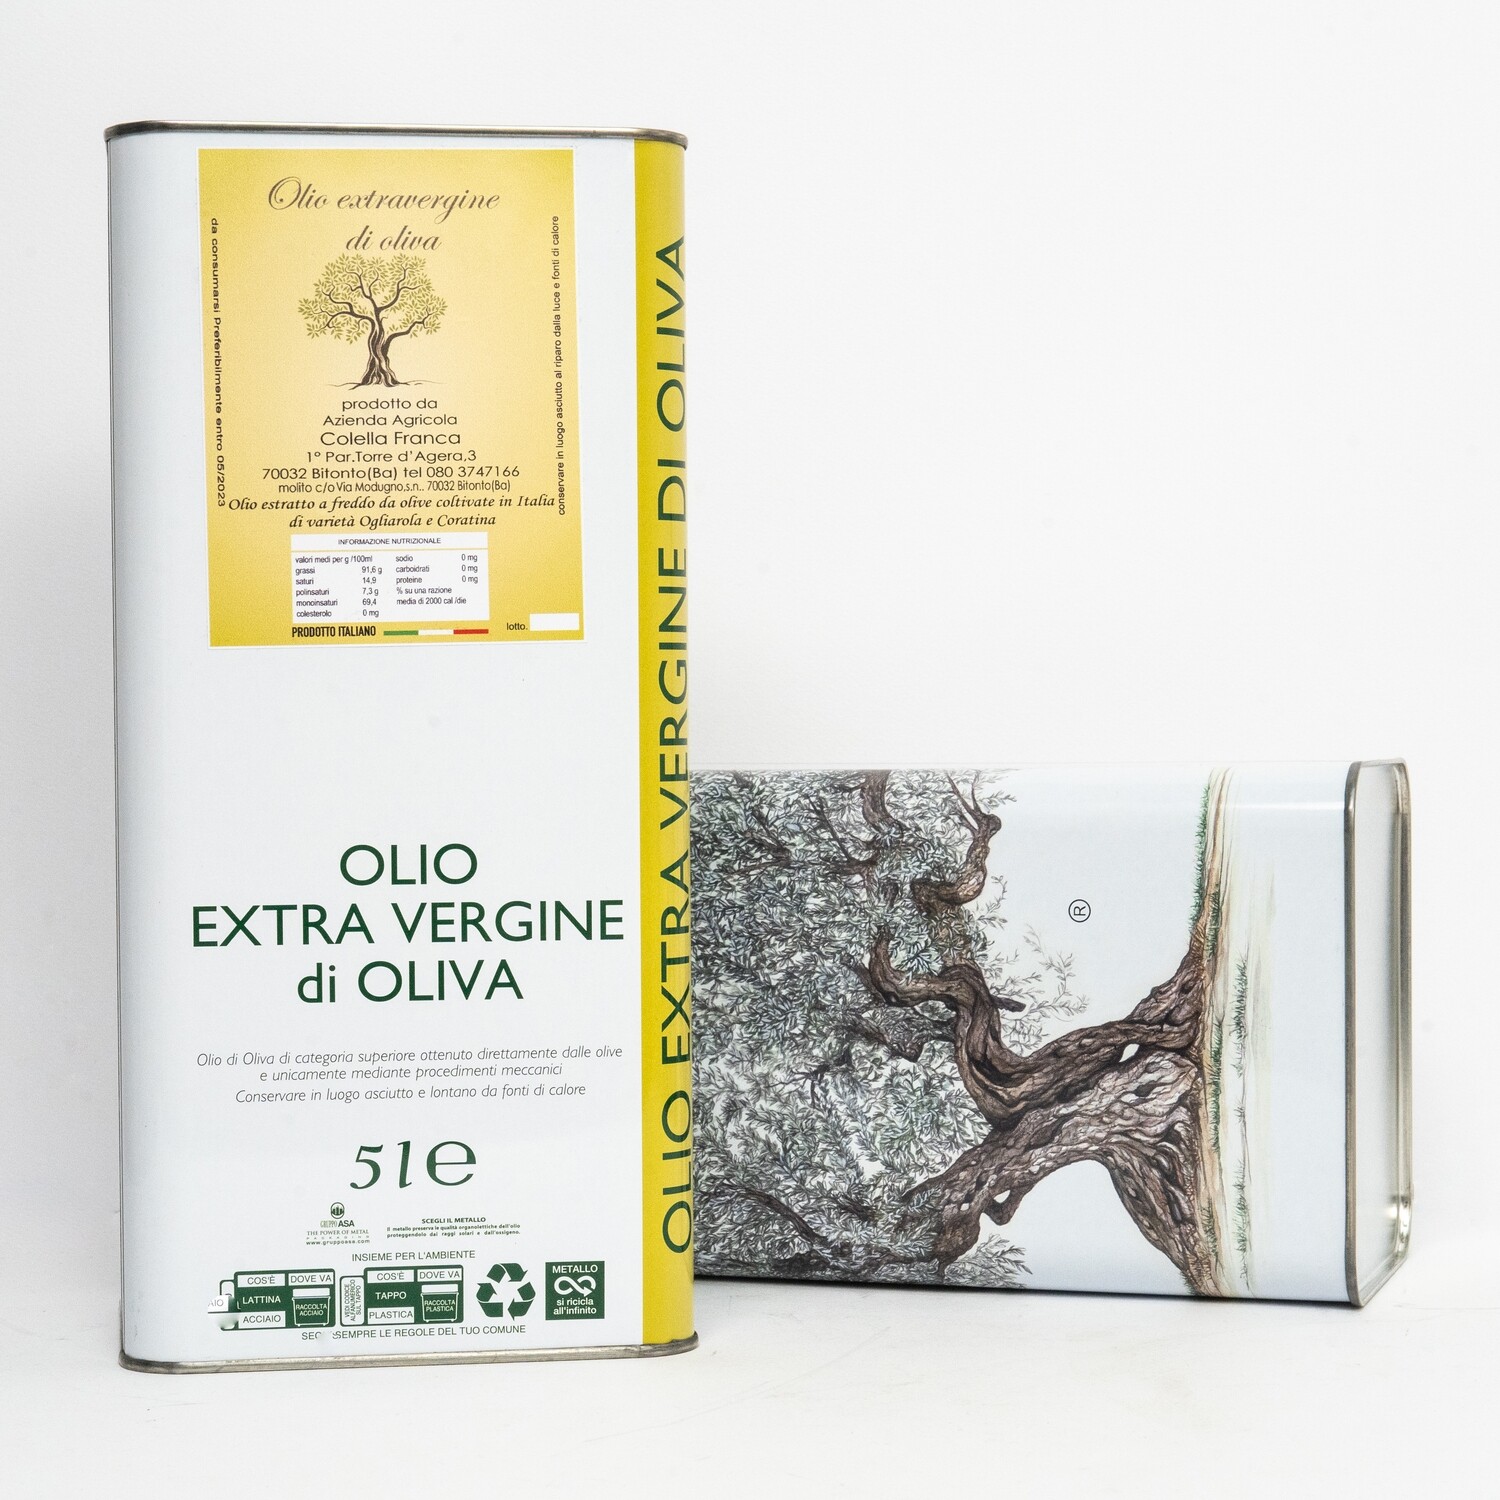 Olio extravergine di oliva blend Ogliarola-Coratina 2021